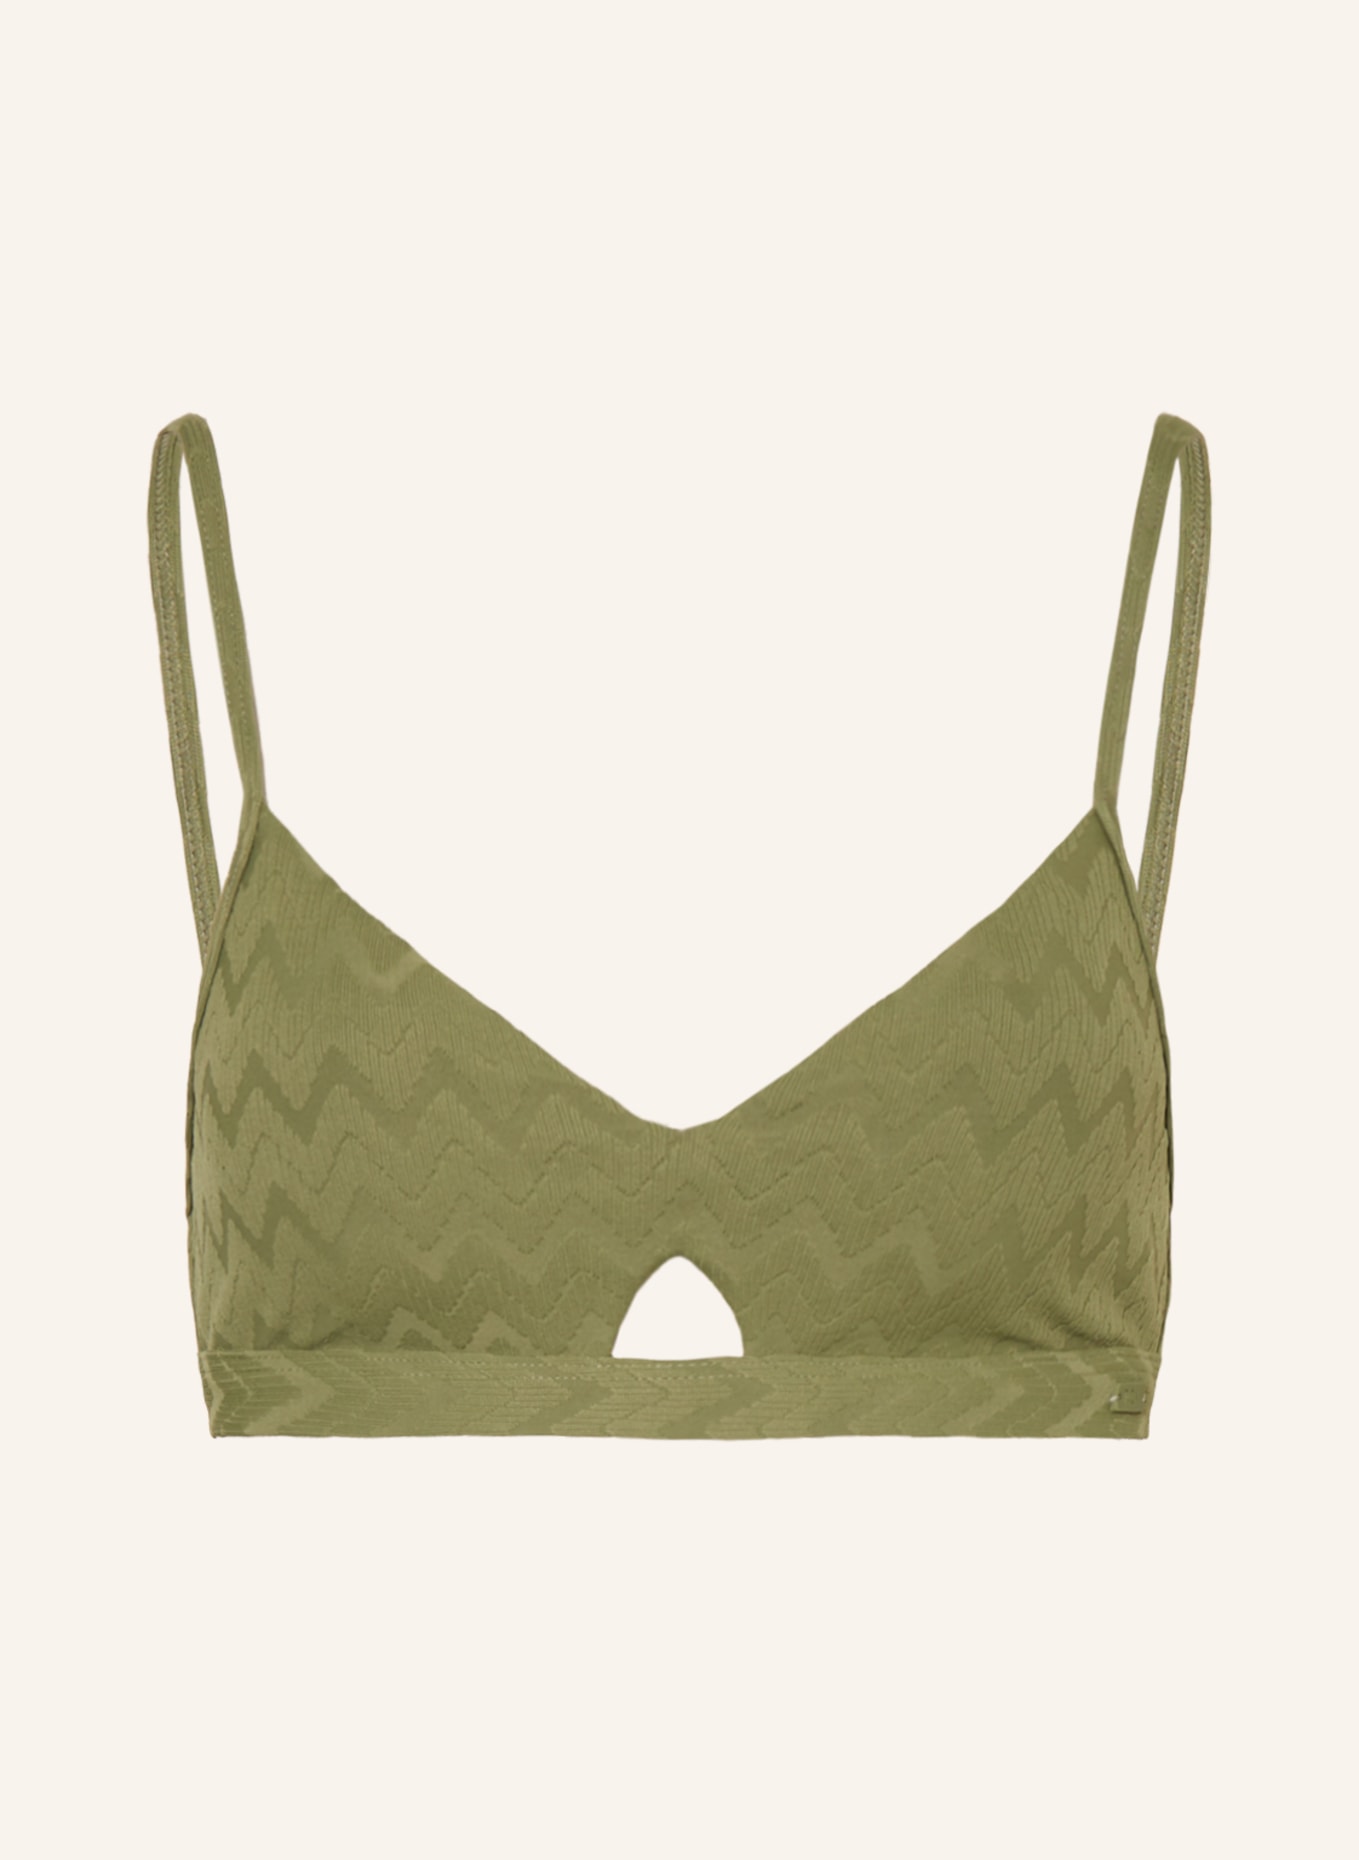 ROXY Bralette-Bikini-Top CURRENT COOLNESS, Farbe: OLIV (Bild 1)